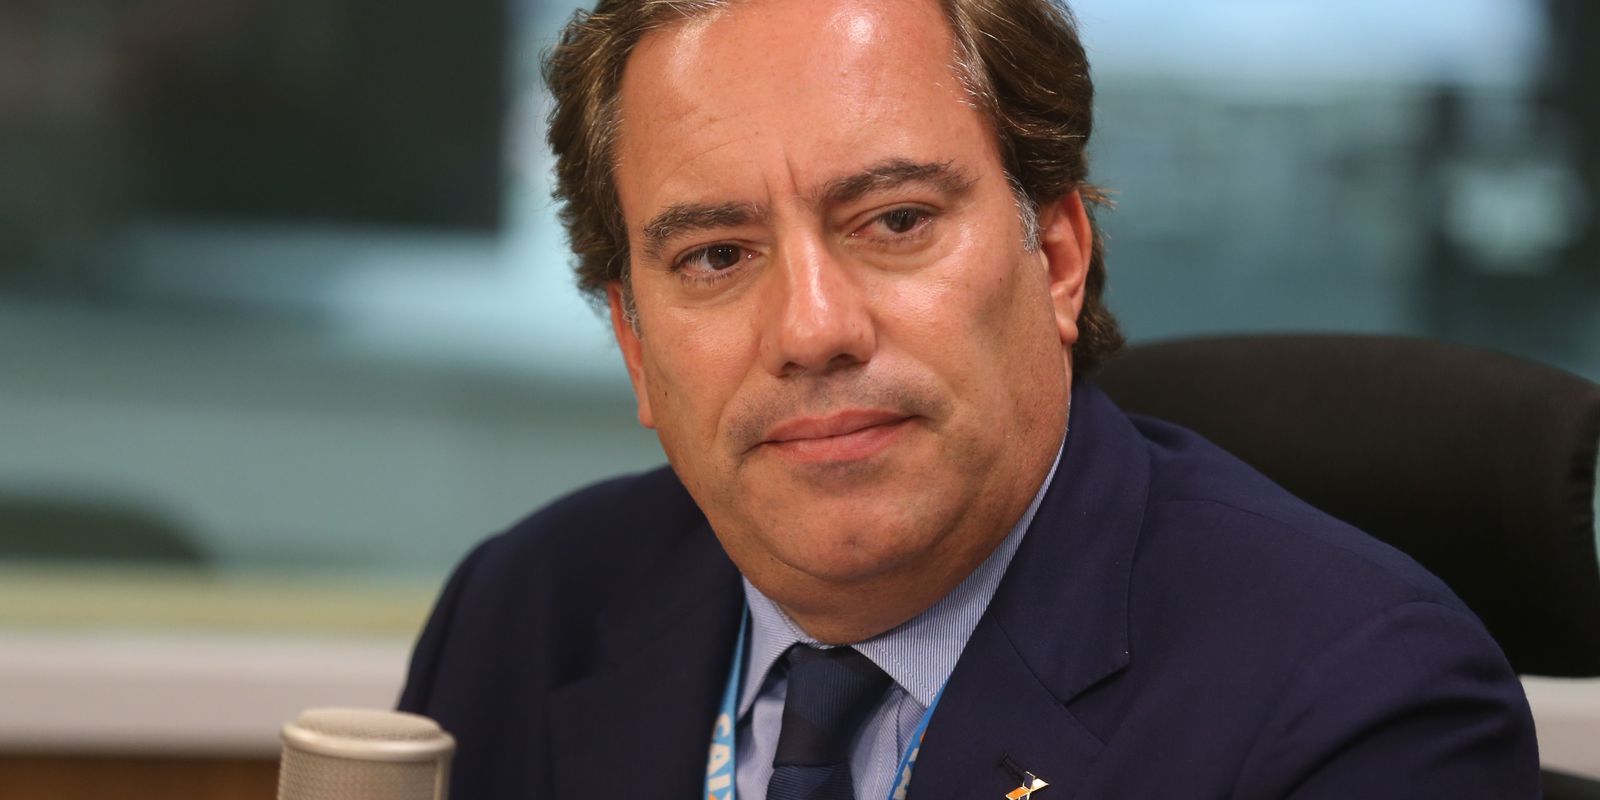 Pedro Guimarães official resigns as president of Caixa